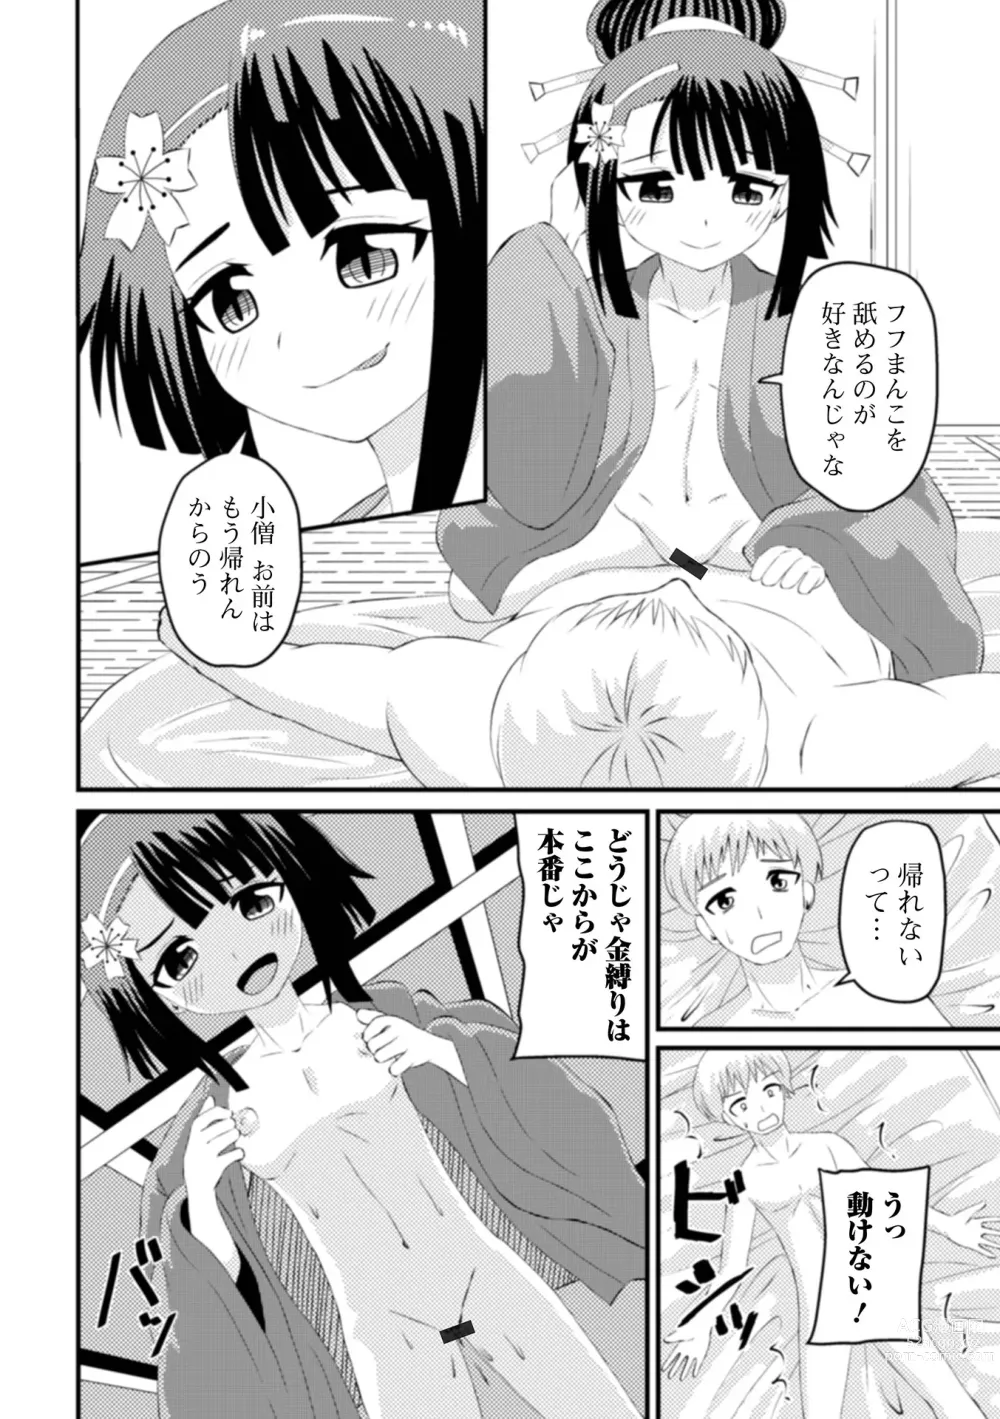 Page 76 of manga Eternal Hime-sama Loli Baba Anthology Vol.1